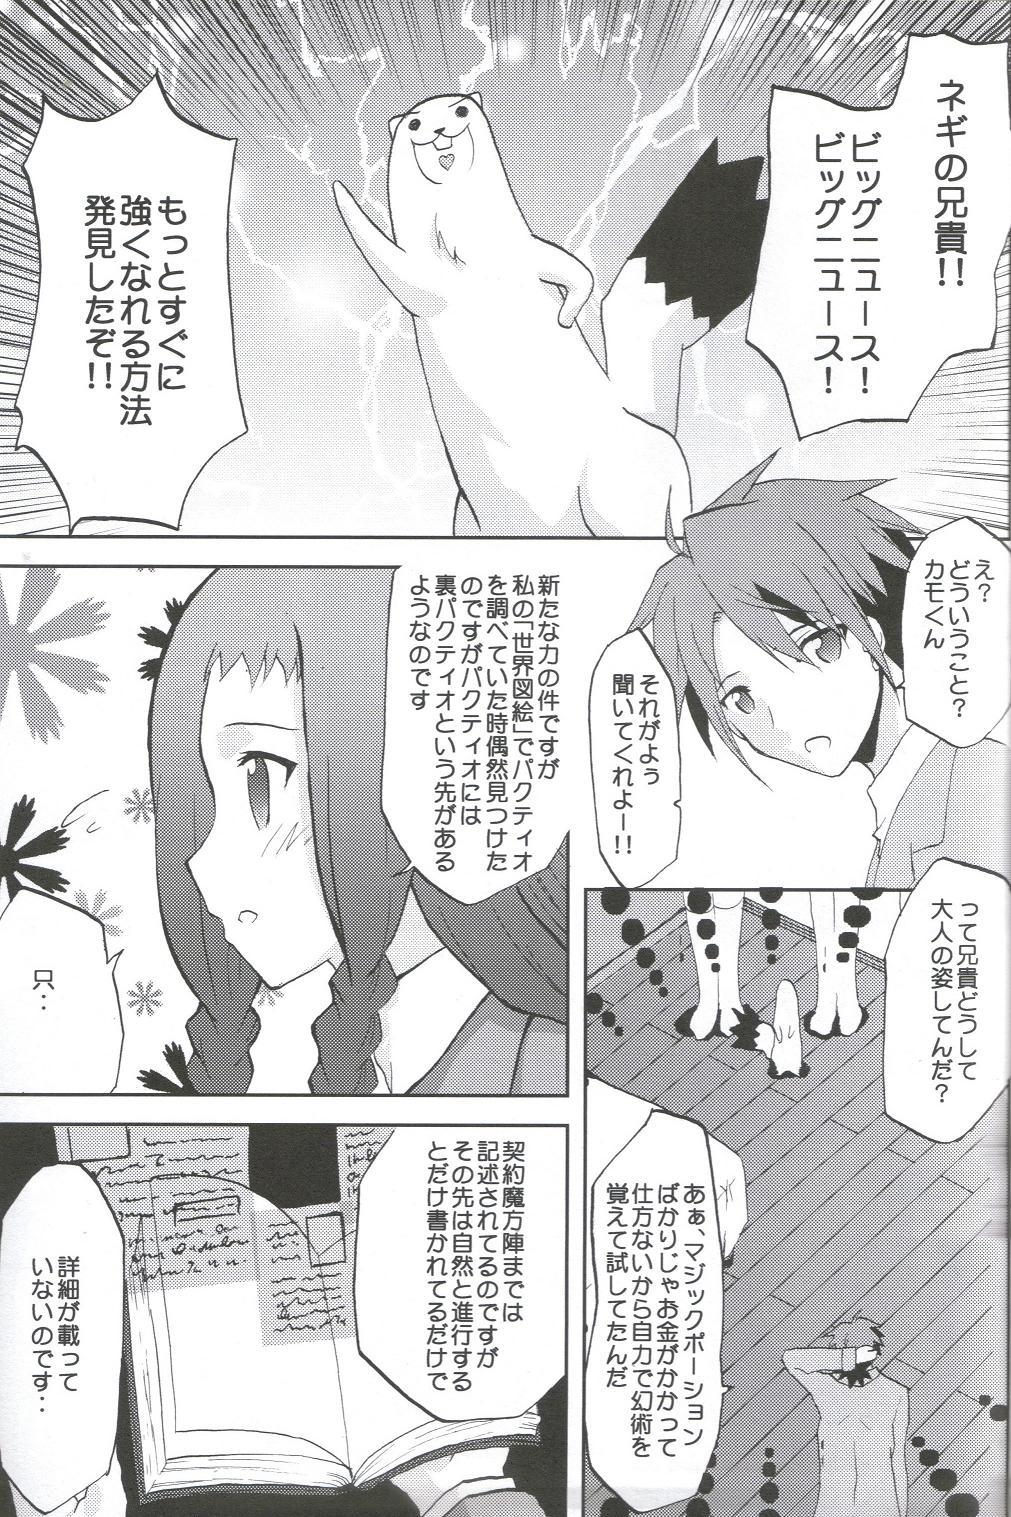 Cdmx Kansen Kakudai .Negi Vol.1 - Mahou sensei negima Hidden Camera - Page 4